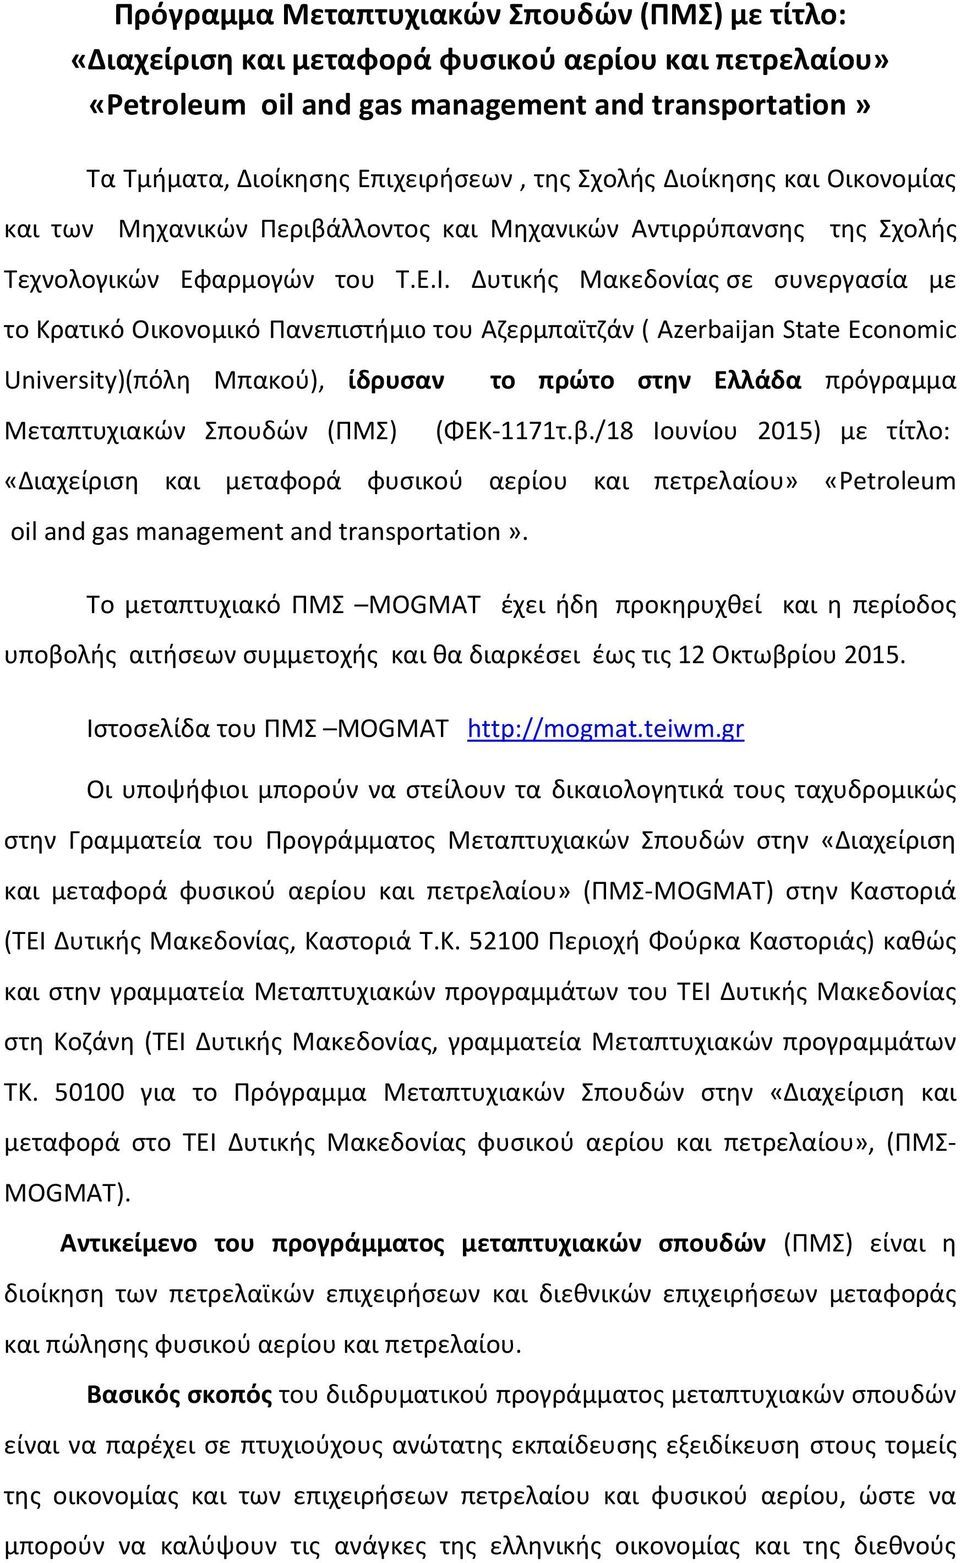 Δυτικής Μακεδονίας σε συνεργασία με το Κρατικό Οικονομικό Πανεπιστήμιο του Αζερμπαϊτζάν ( Azerbaijan State Economic University)(πόλη Μπακού), ίδρυσαν Μεταπτυχιακών Σπουδών (ΠΜΣ) το πρώτο στην Ελλάδα